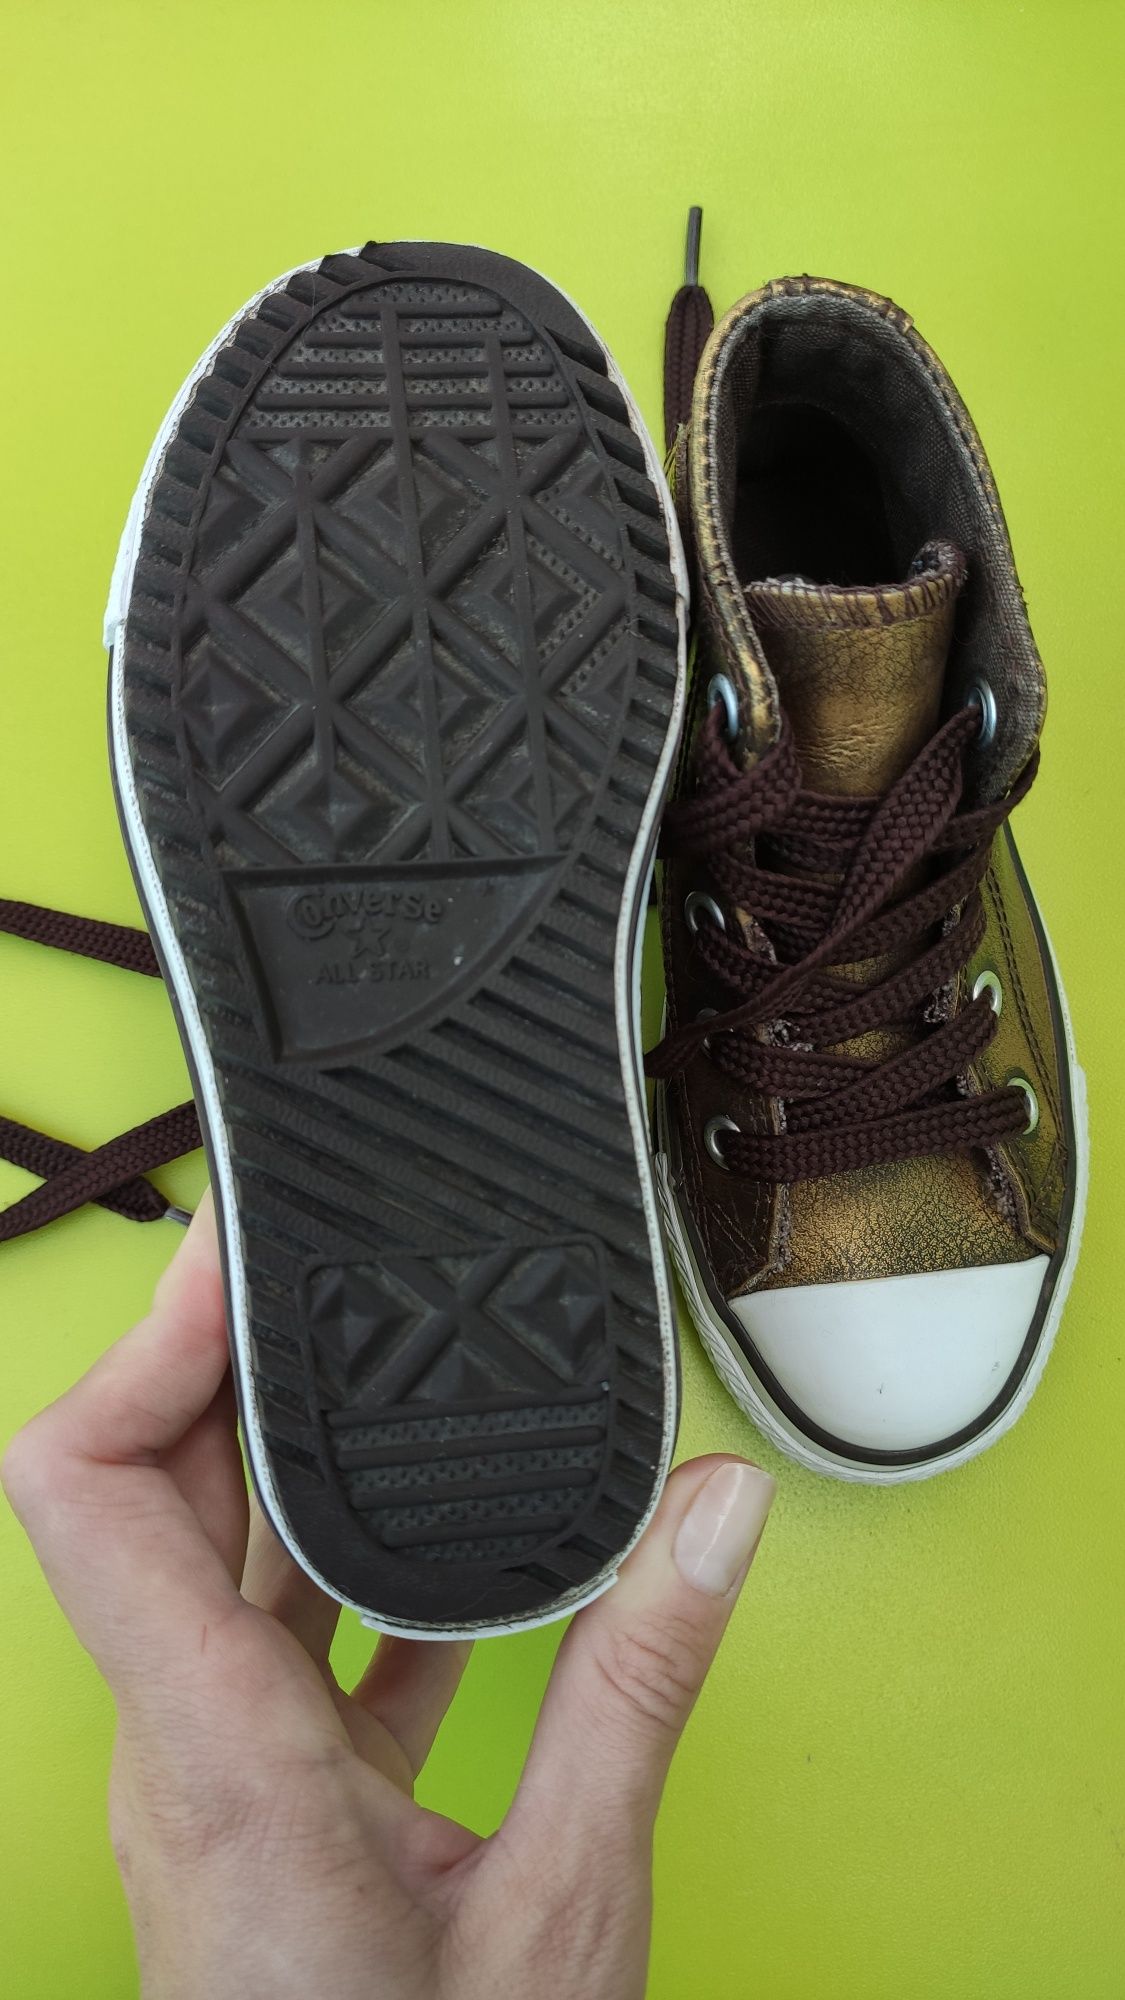 Ботинки кеды кожаные Конверс Converse для девочки размер 27, 17 см.